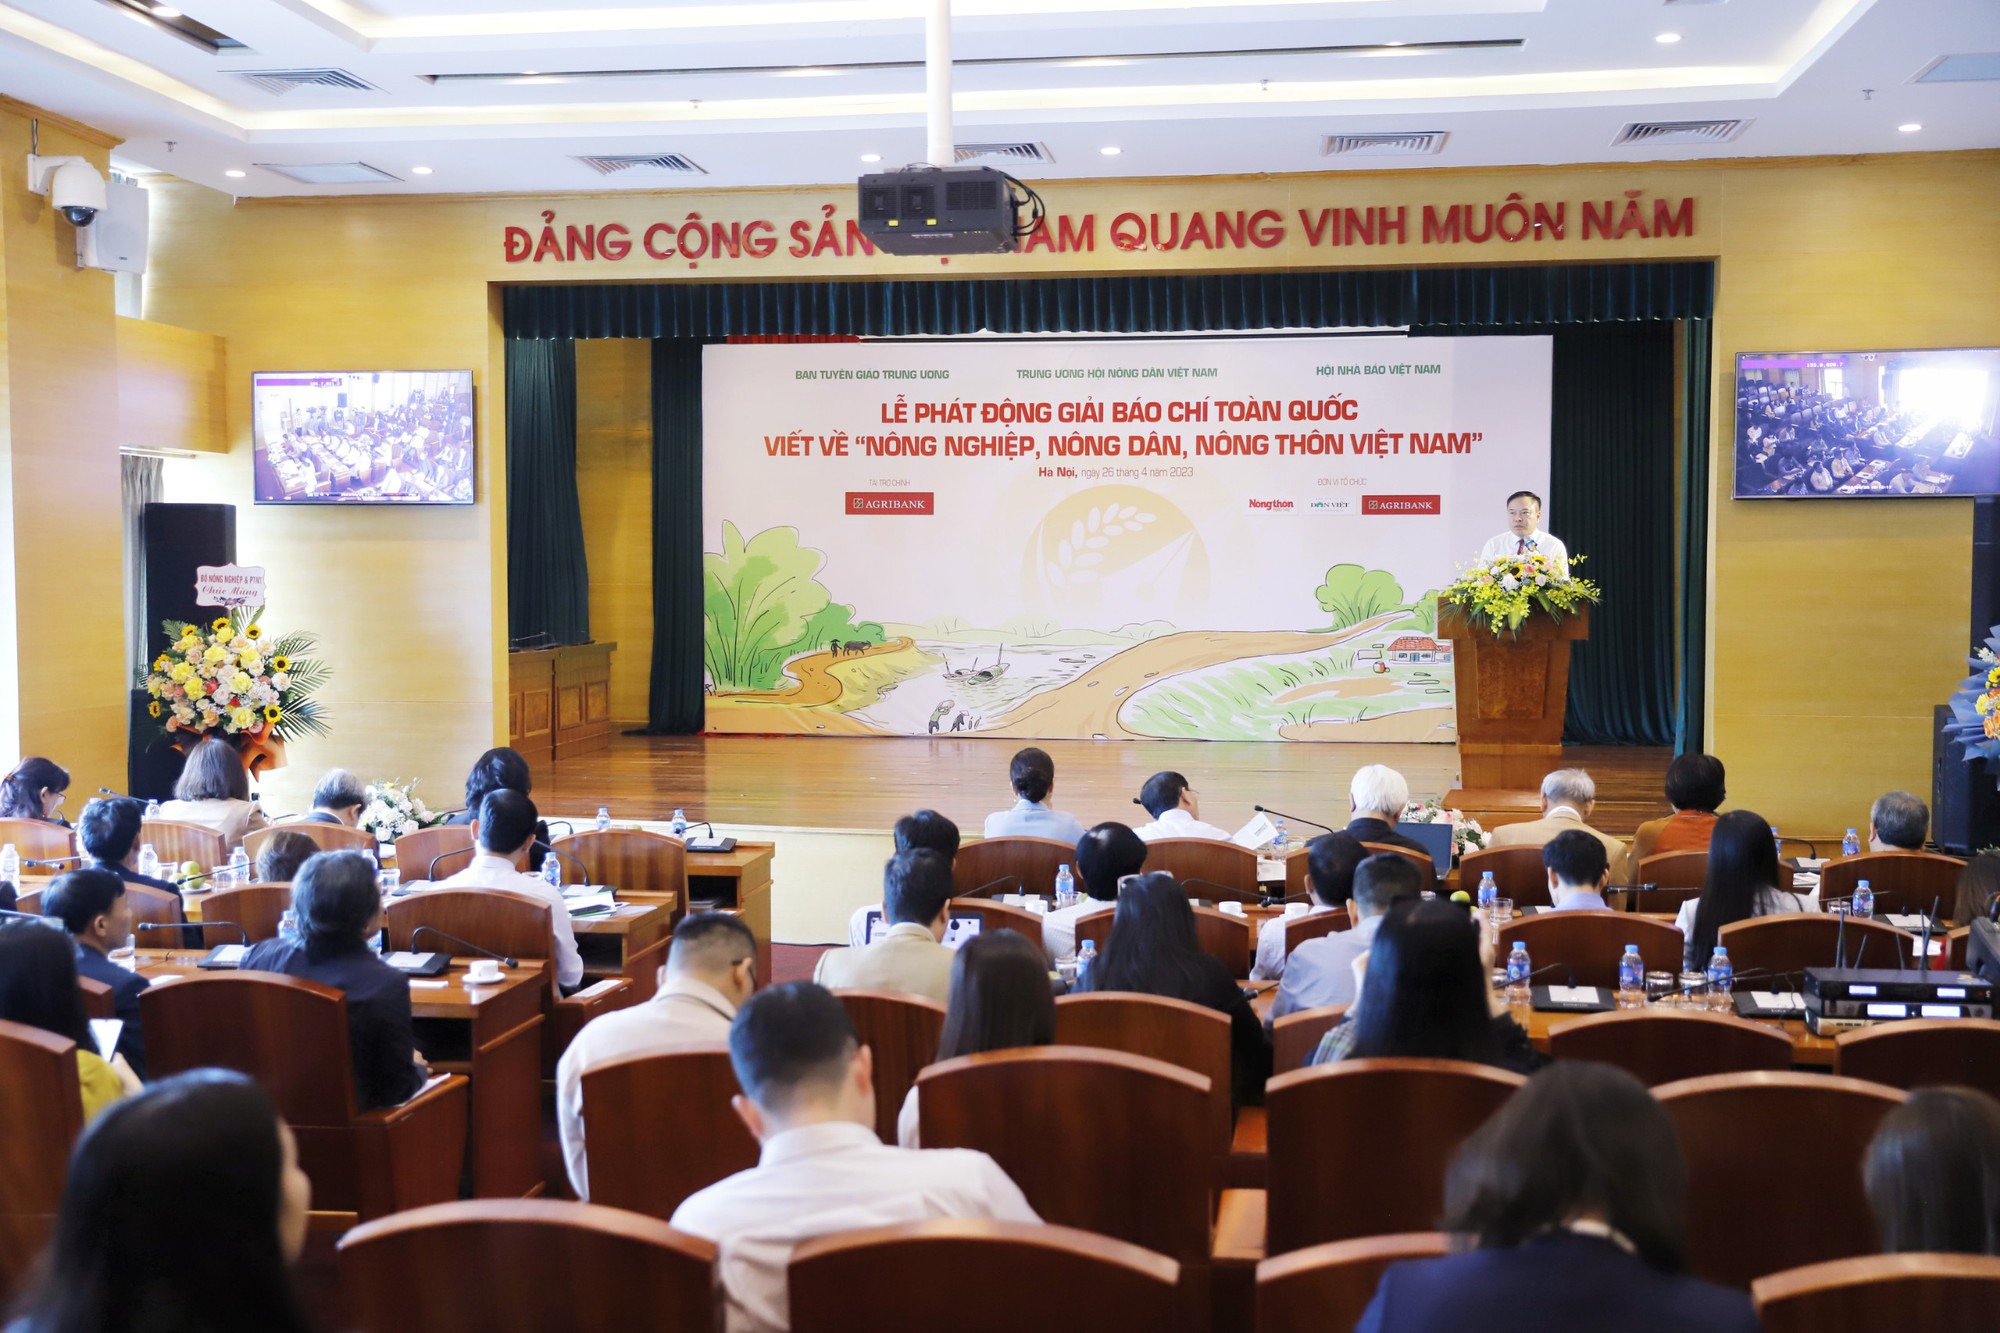 Chính thức phát động Giải báo chí toàn quốc viết về &quot;Nông nghiệp, nông dân, nông thôn Việt Nam&quot; năm 2023 - Ảnh 1.